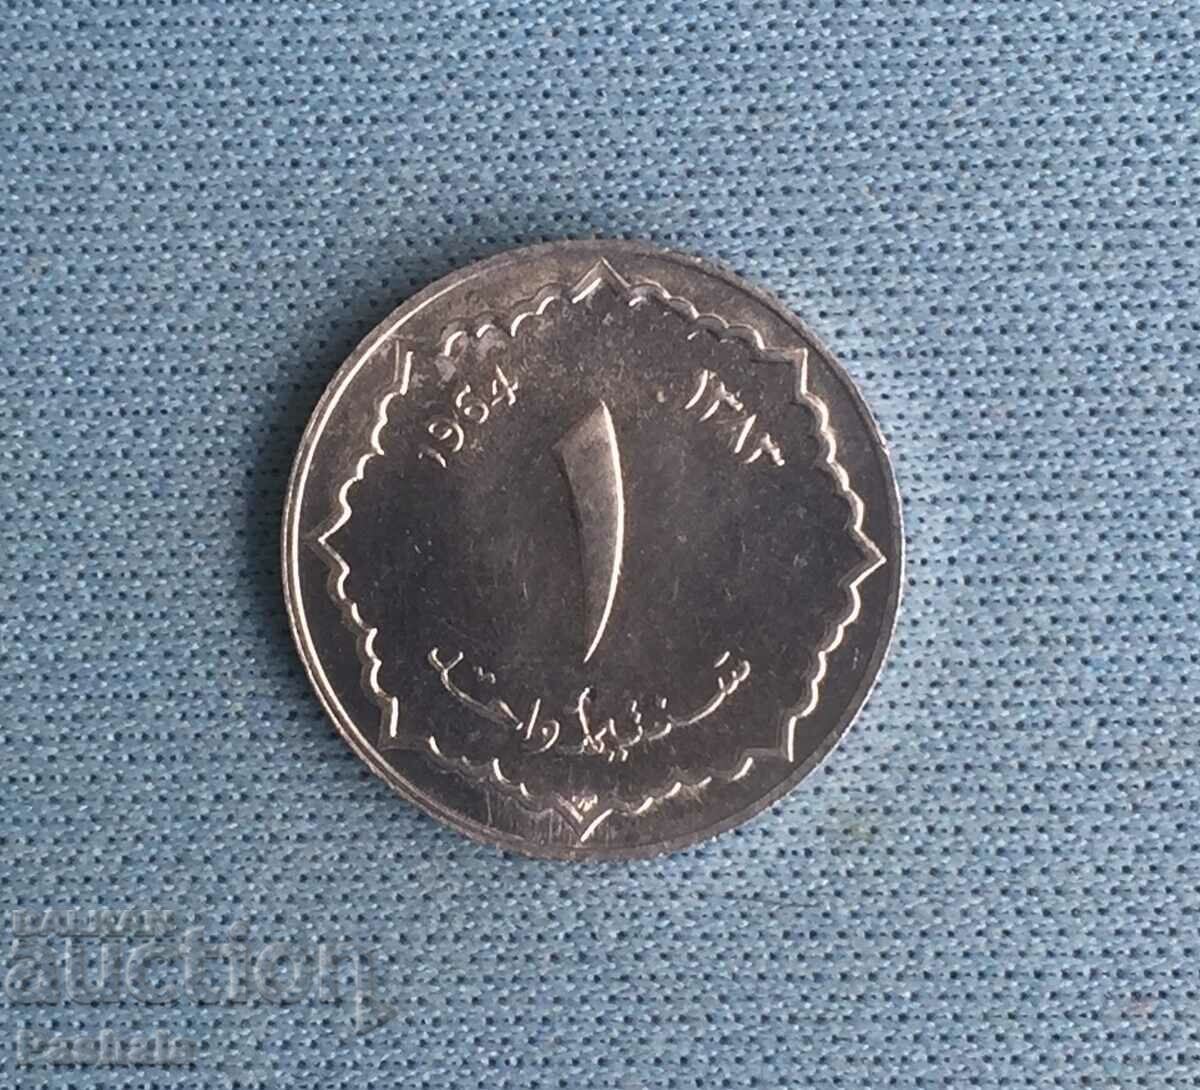 Algeria 1 centim 1964